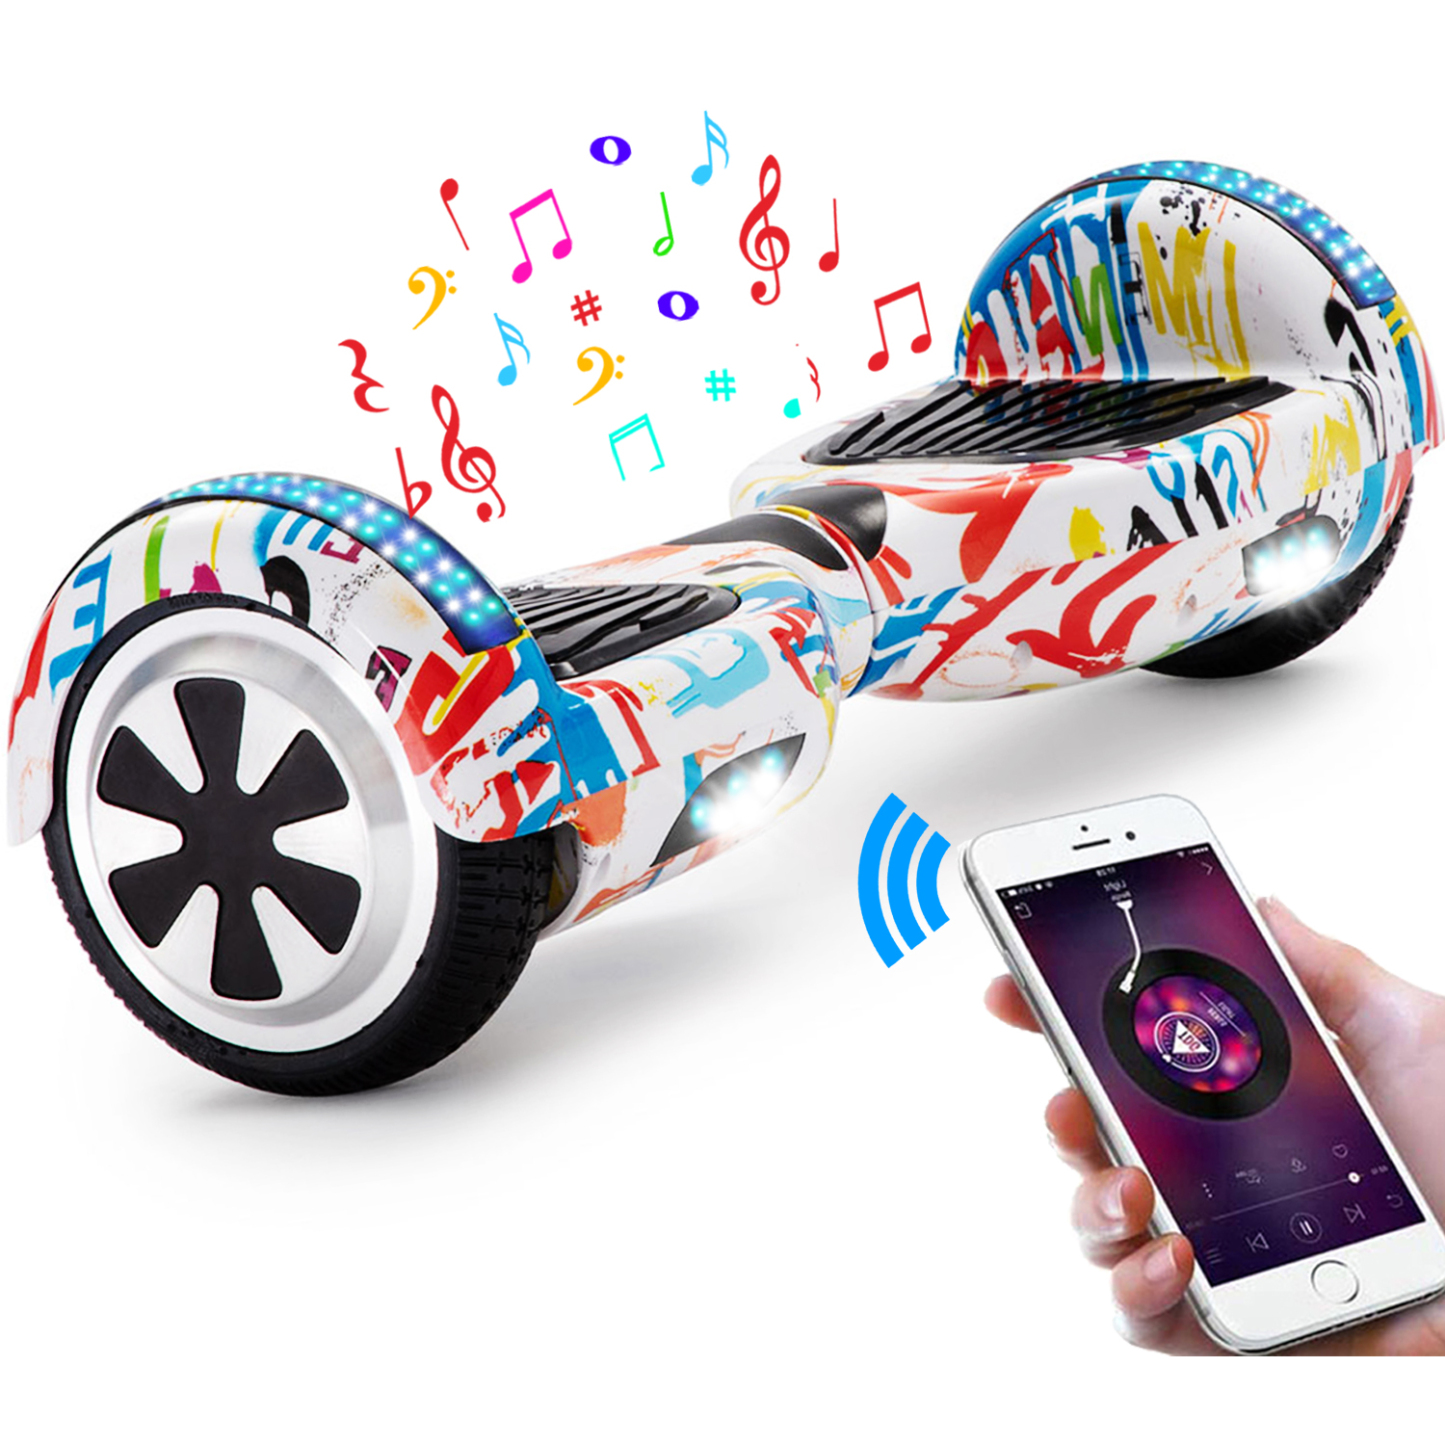 Neues 6,5" Graffiti Hoverboard weiß mit Bluetooth Musik Lautsprecher und LED Licht - 500W 12km/h